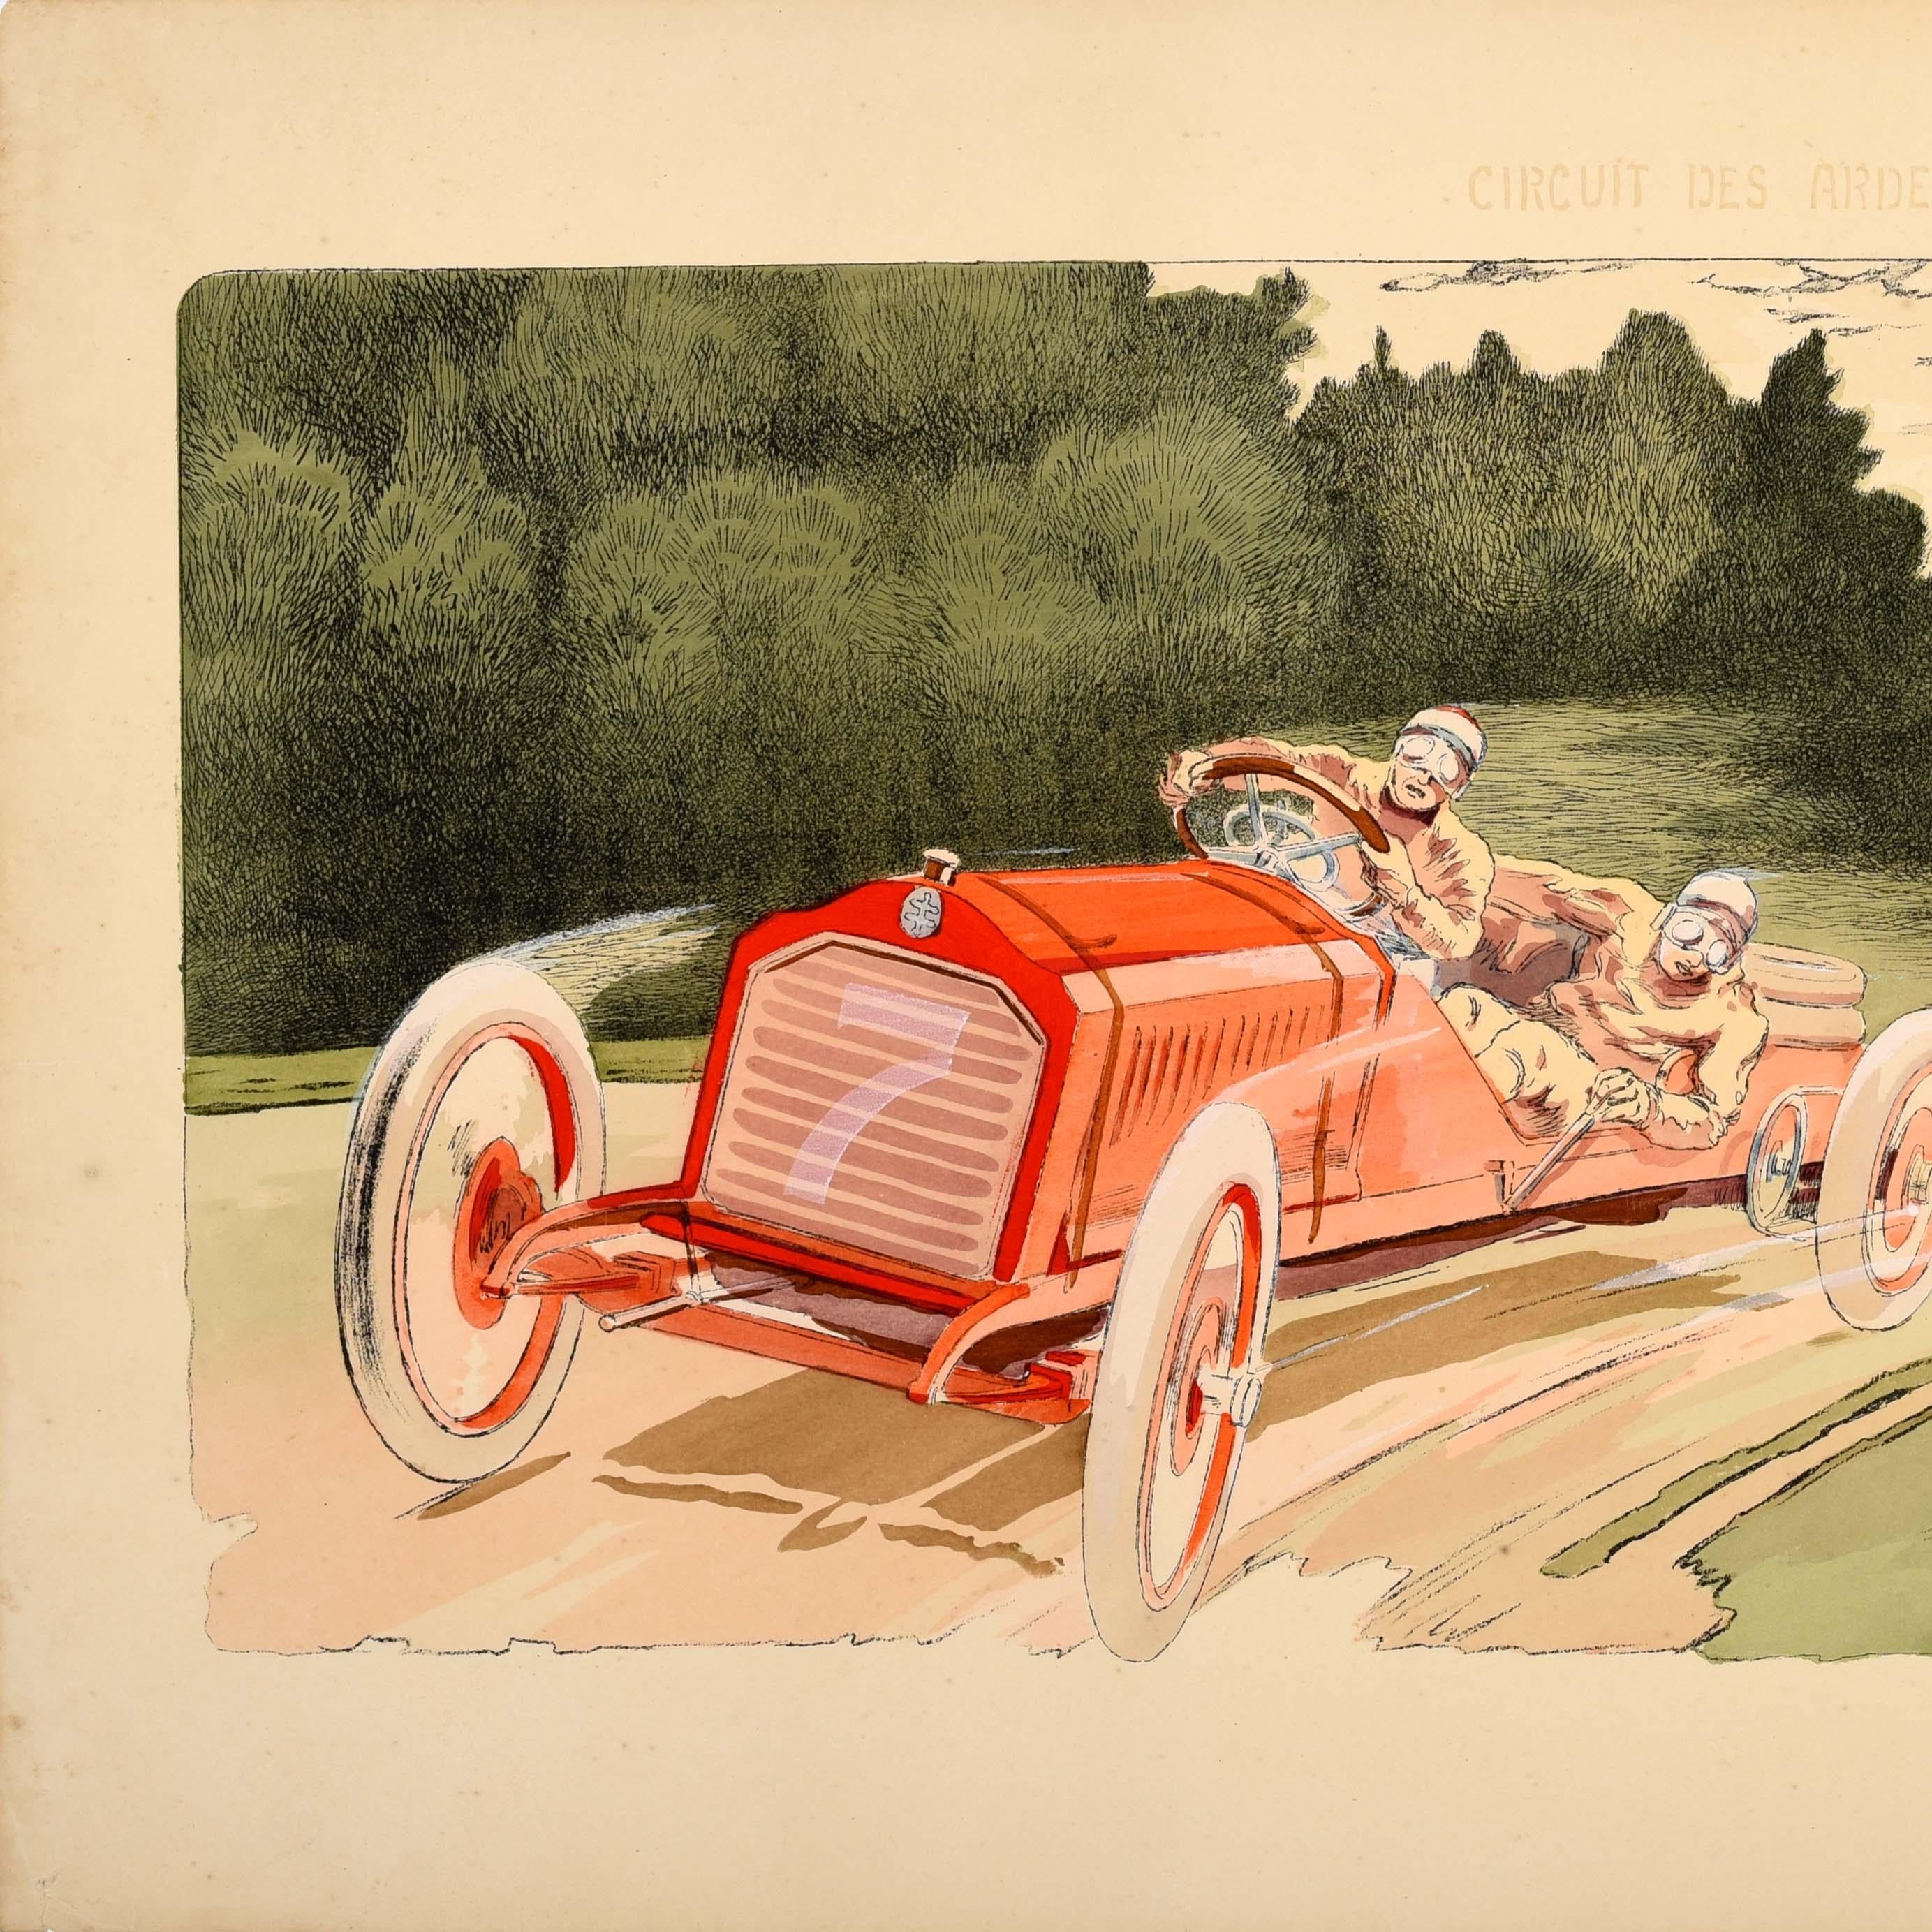 Original-Vintage- Motorsport-Poster, Circuit Des Ardennes Belge 1906, Arthur Duray (Beige), Print, von Ernest Montaut